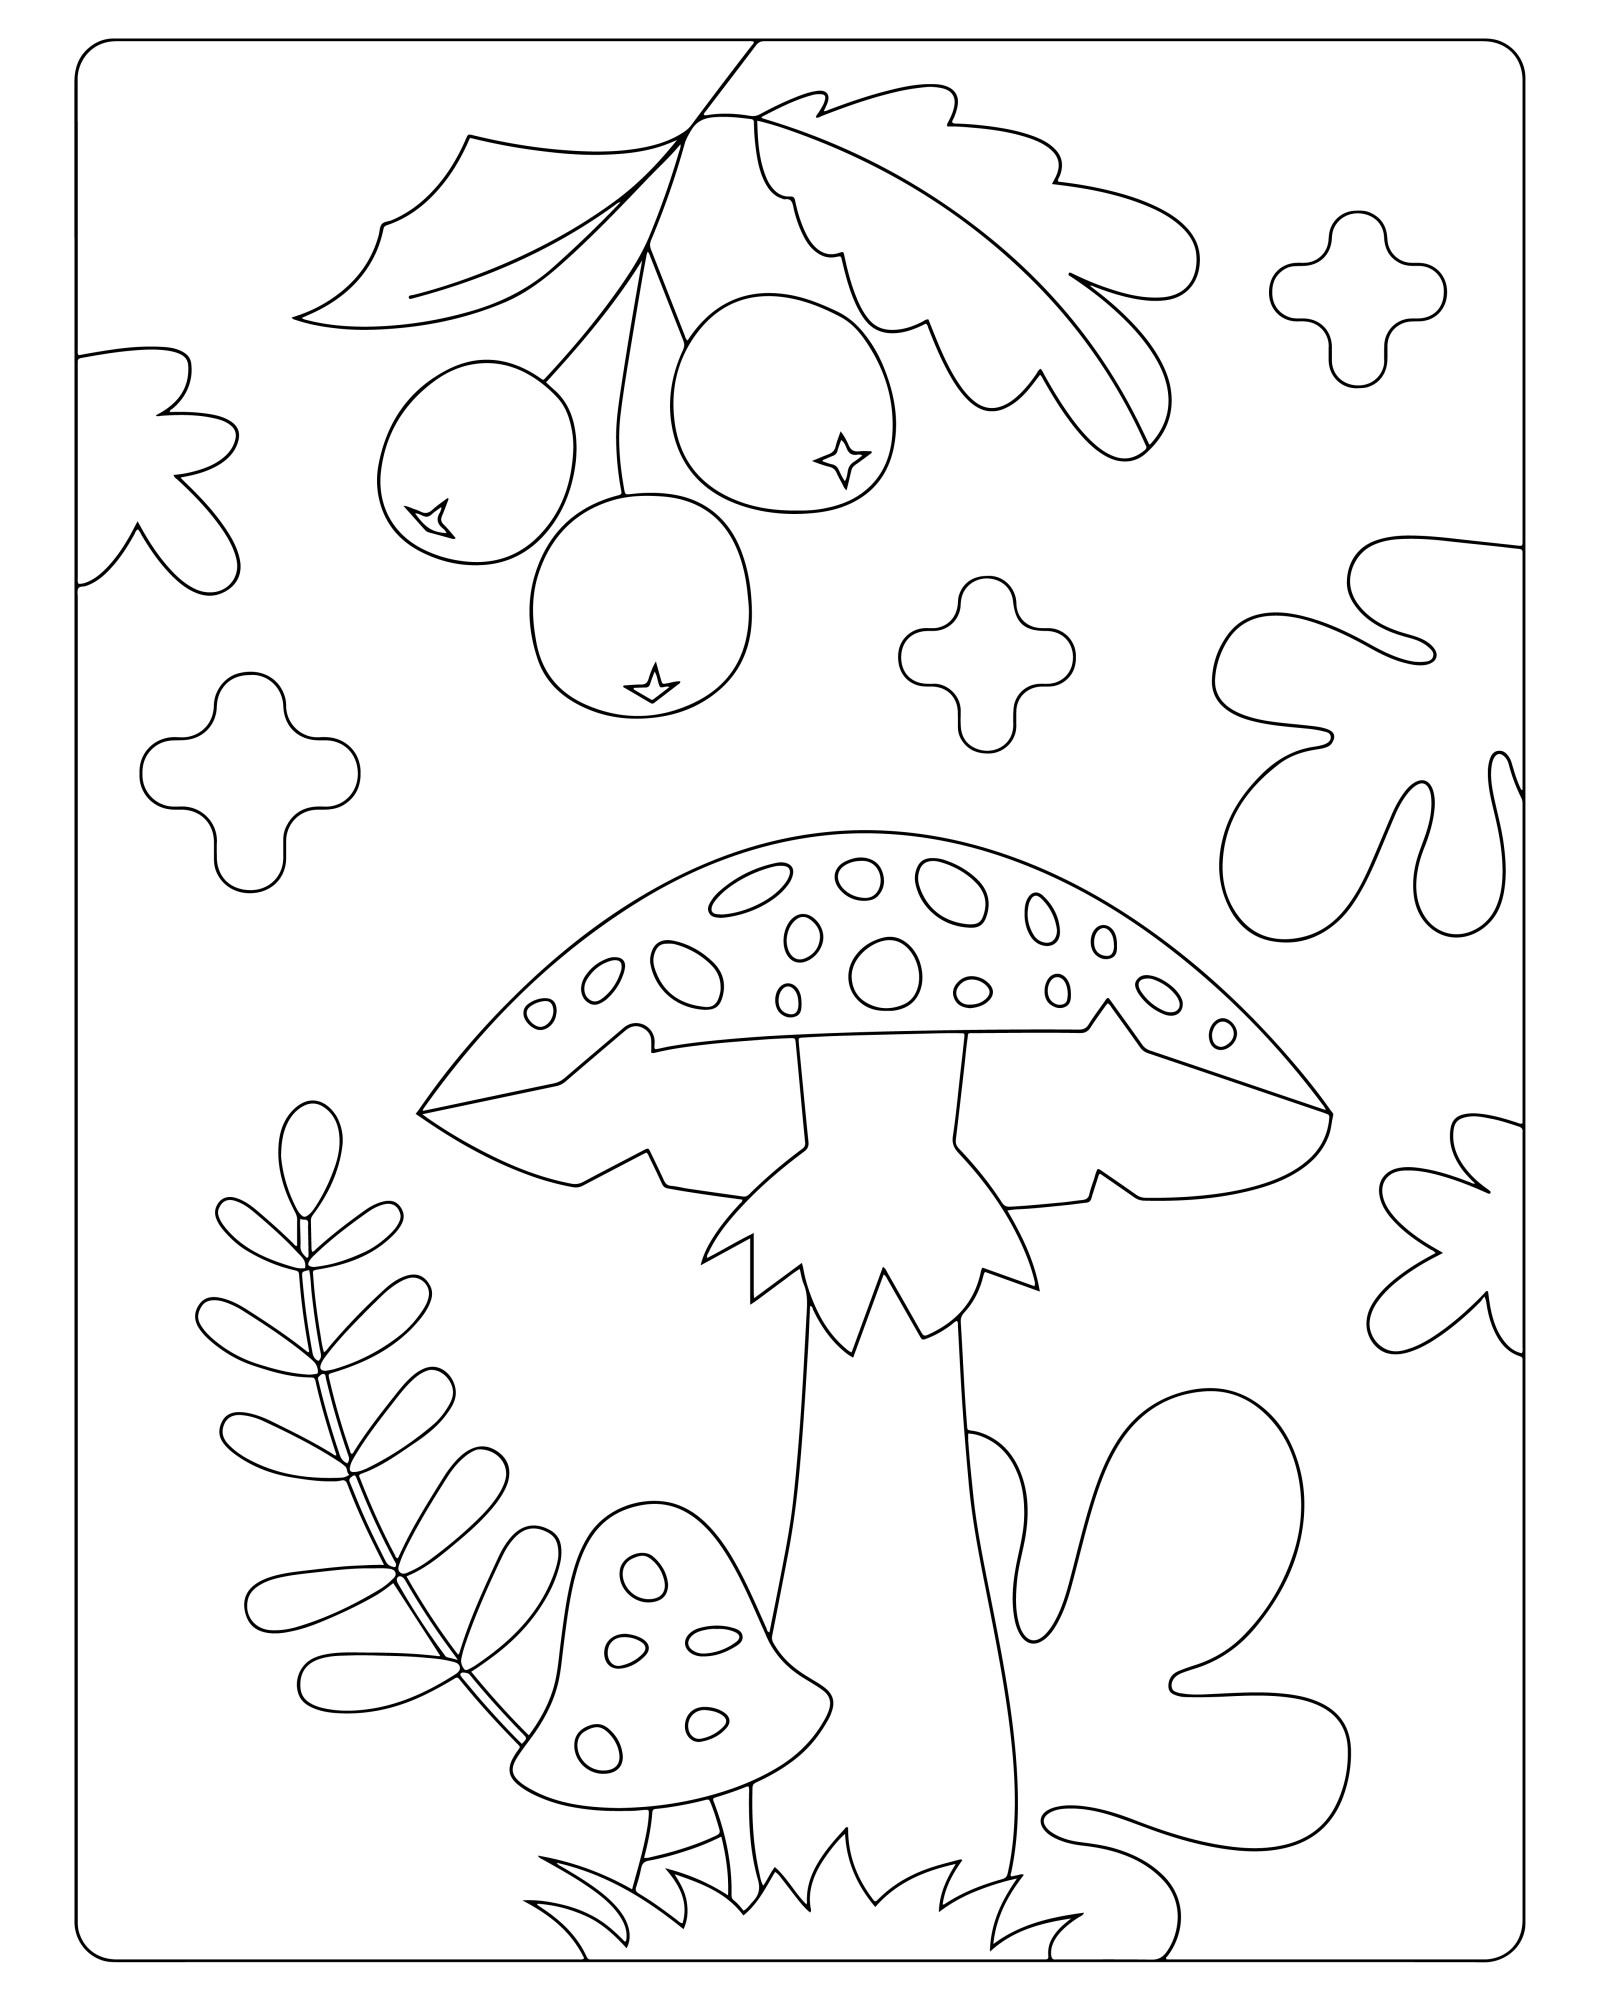 Раскраска для детей: гриб осенью с ягодами и листьями